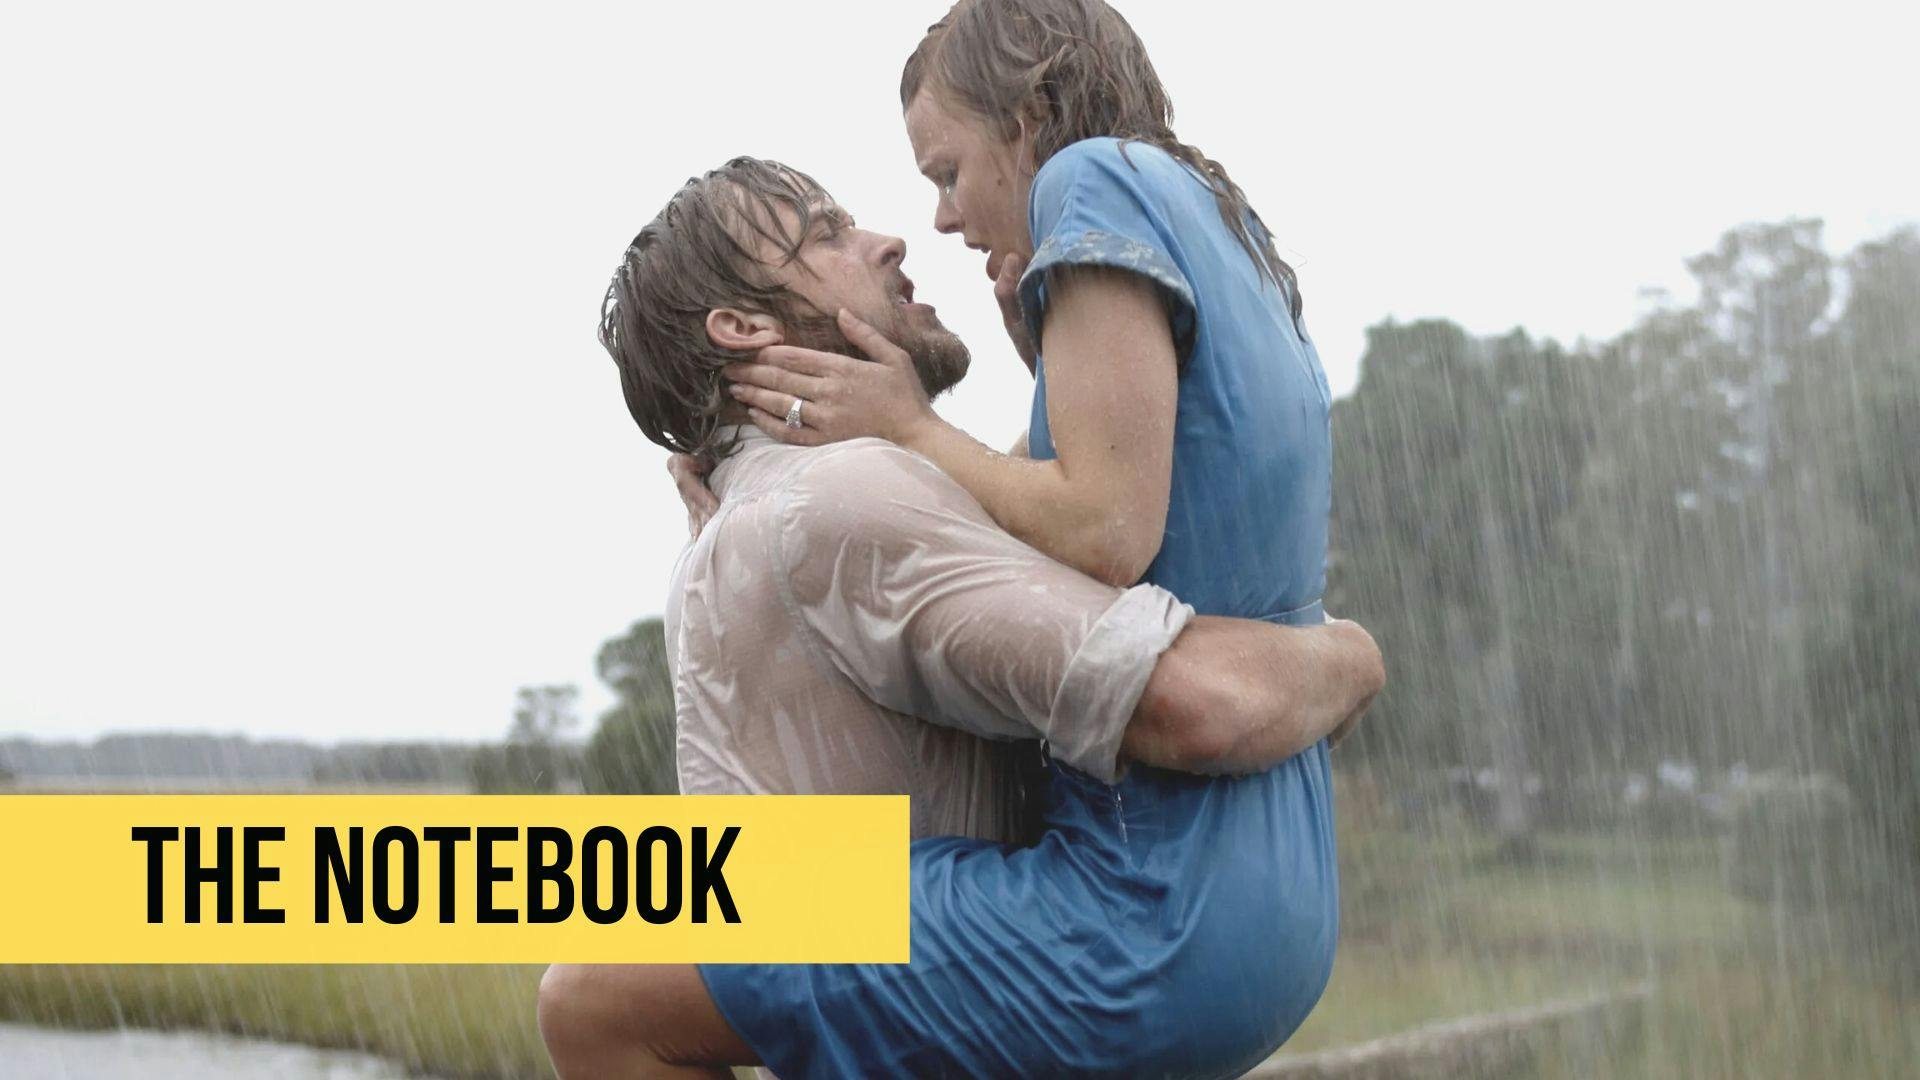 Extrait du film the notebook avec les protagonistes ensemble sous la pluie